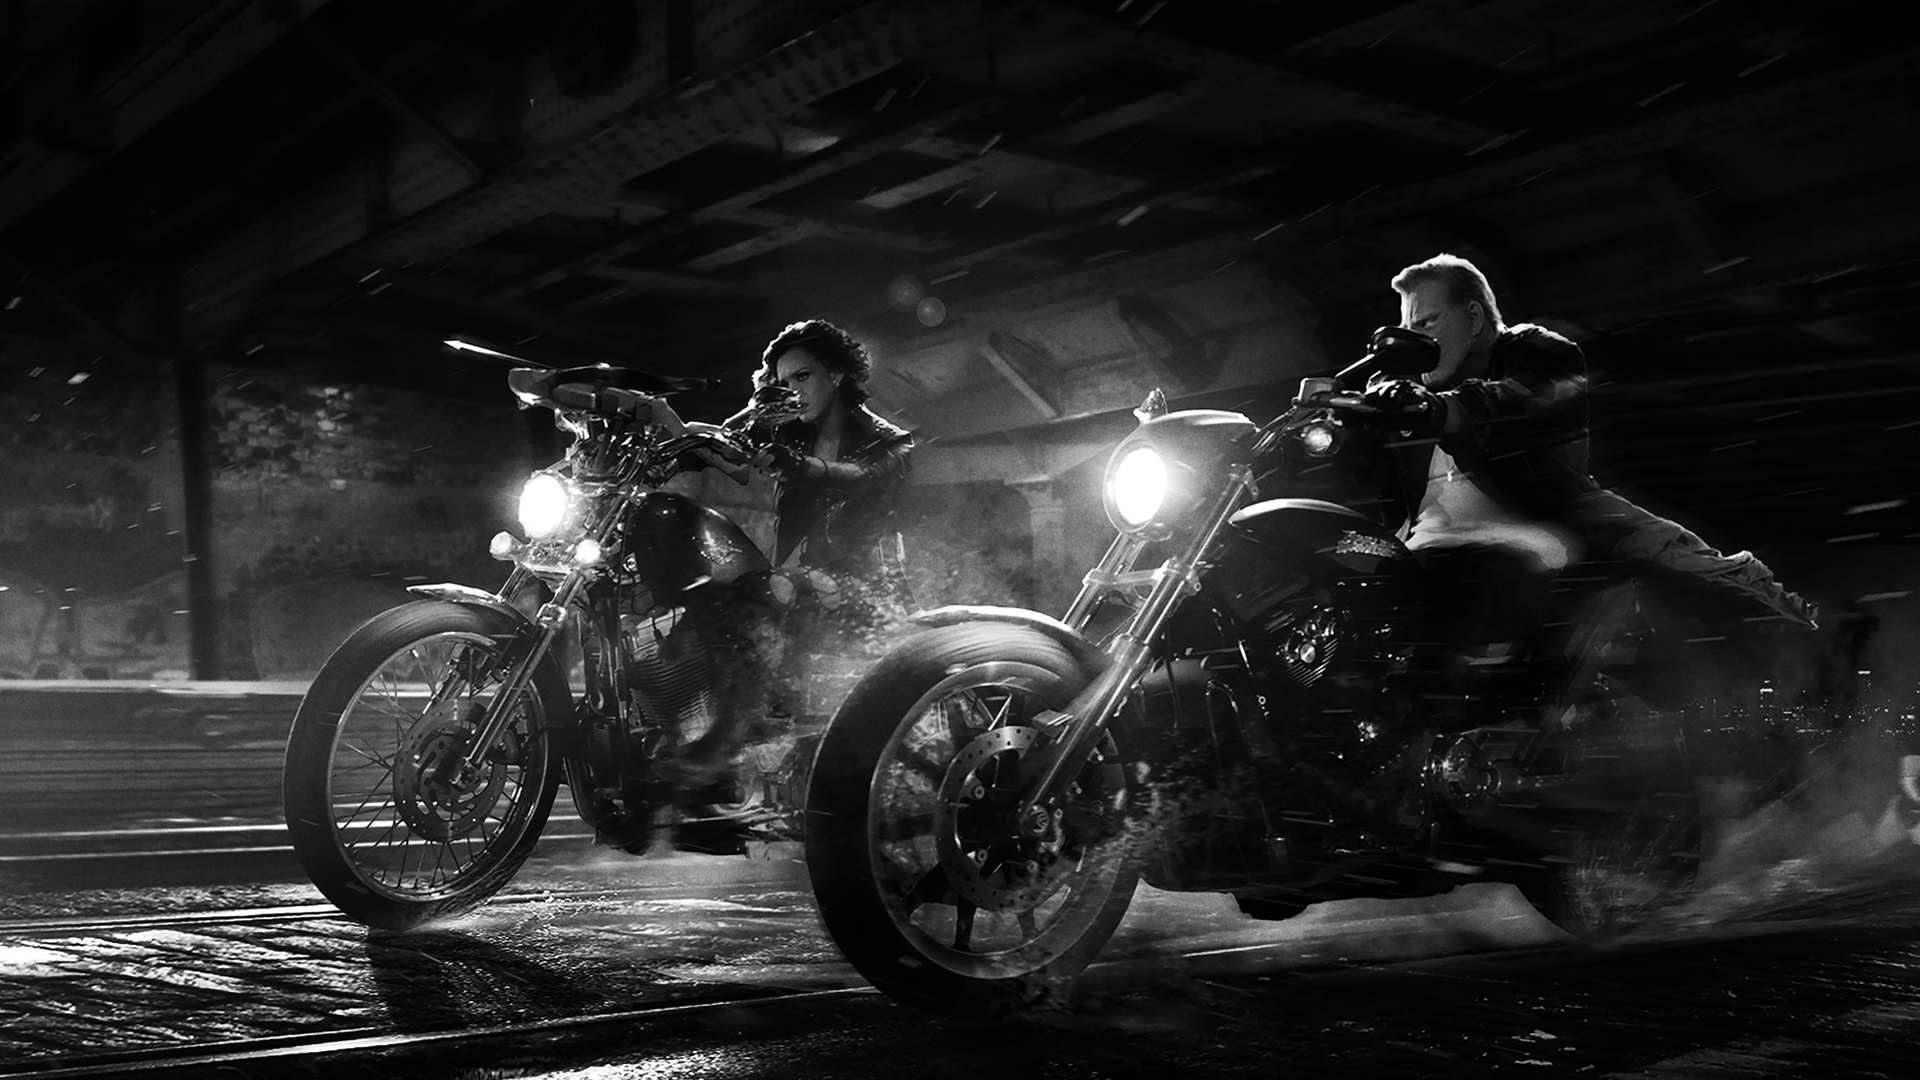 祝 シン シティ2 復讐の女神 2015年01月10日公開決定 迷走riderの眠れぬ日々